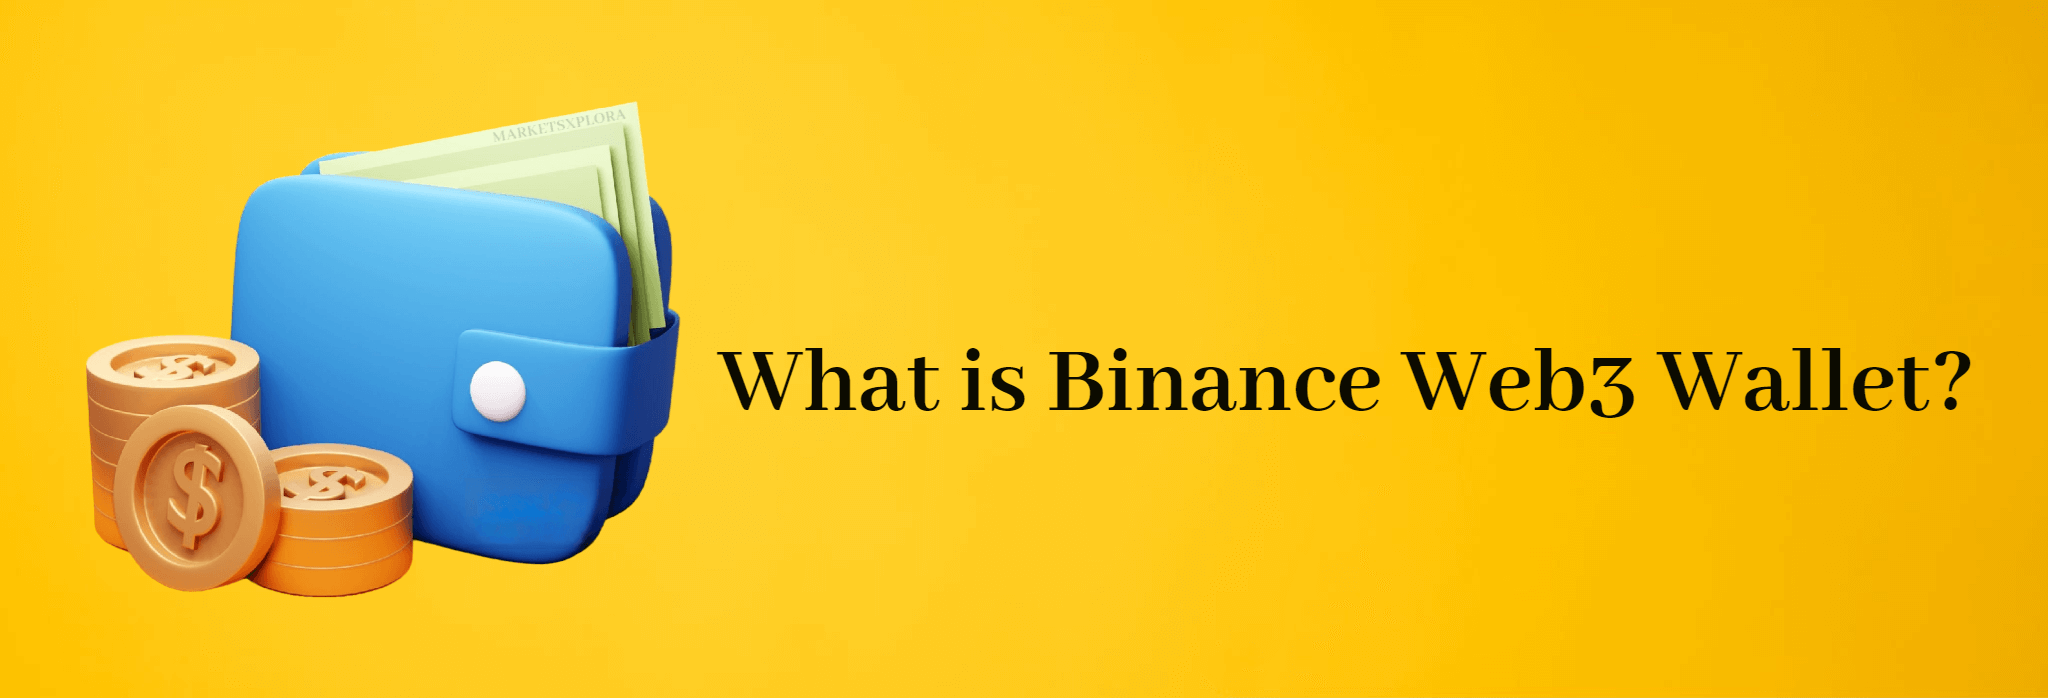 What is Binance Web3 Wallet?